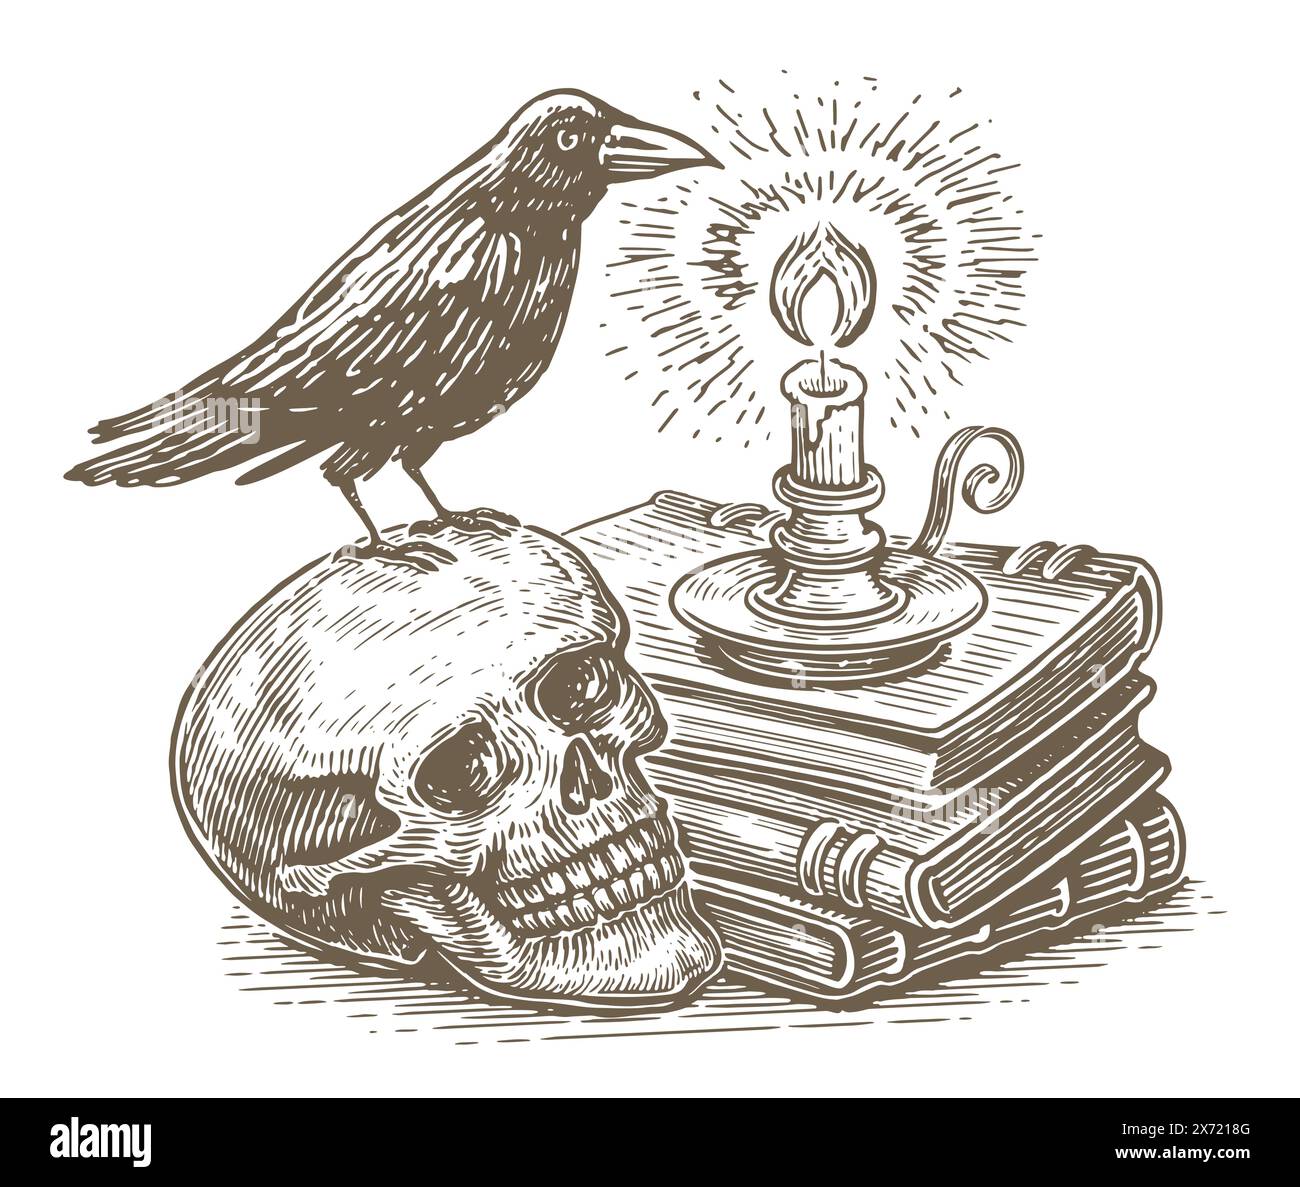 Candela e libri con incantesimi magici, teschio umano con corvo seduto sopra. Stregoneria, occulto, esoterico, definizione Illustrazione Vettoriale